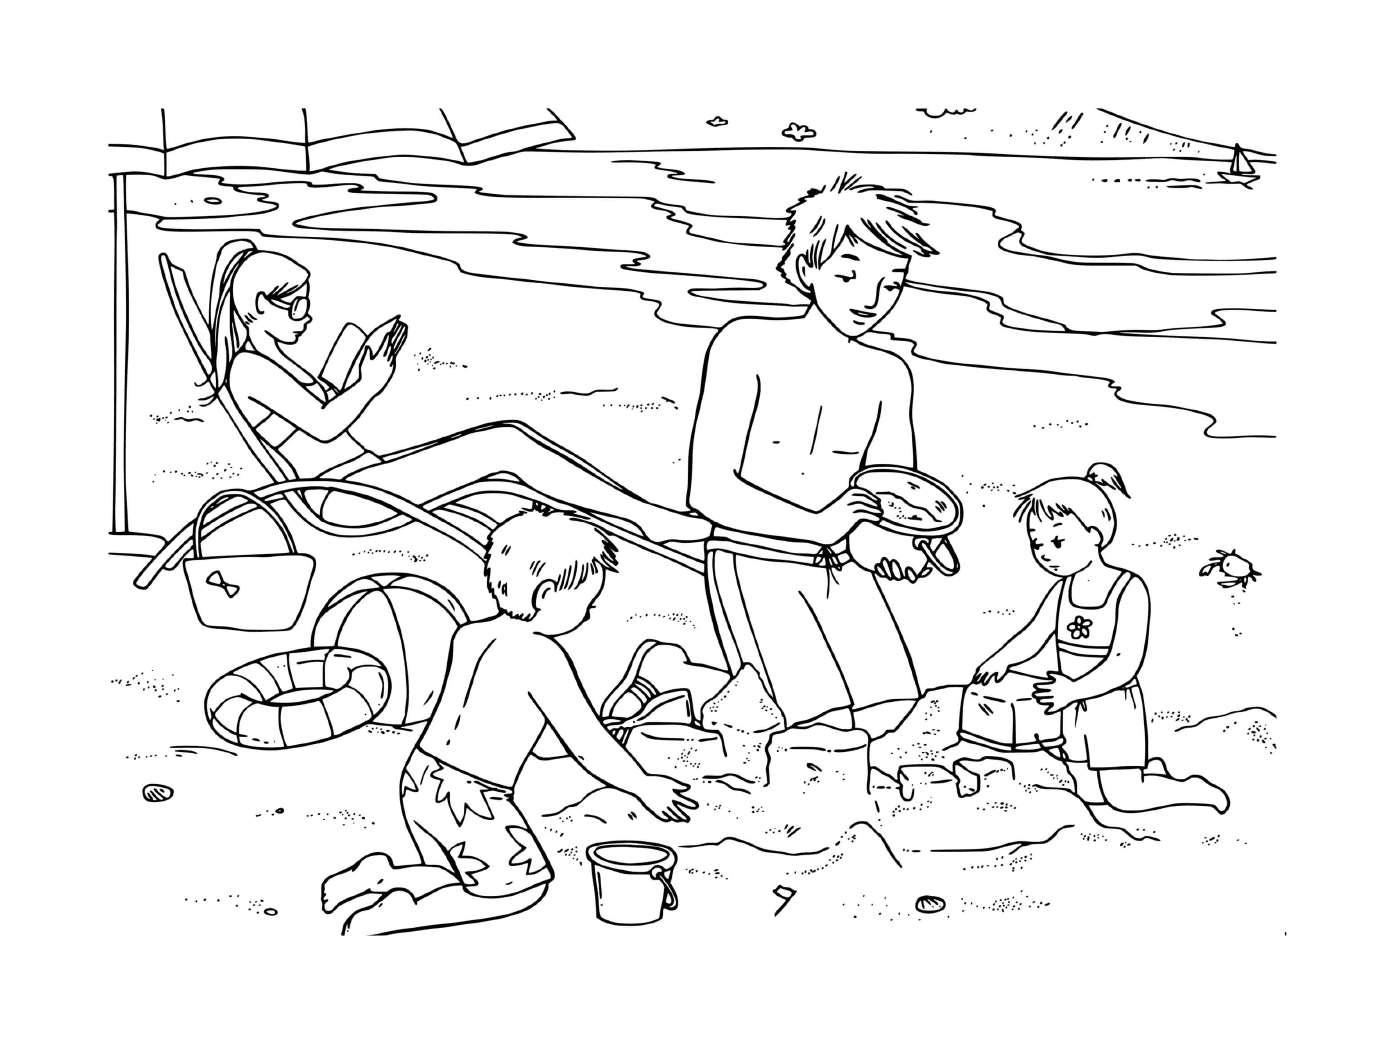  Familie am Strand Spaß haben 